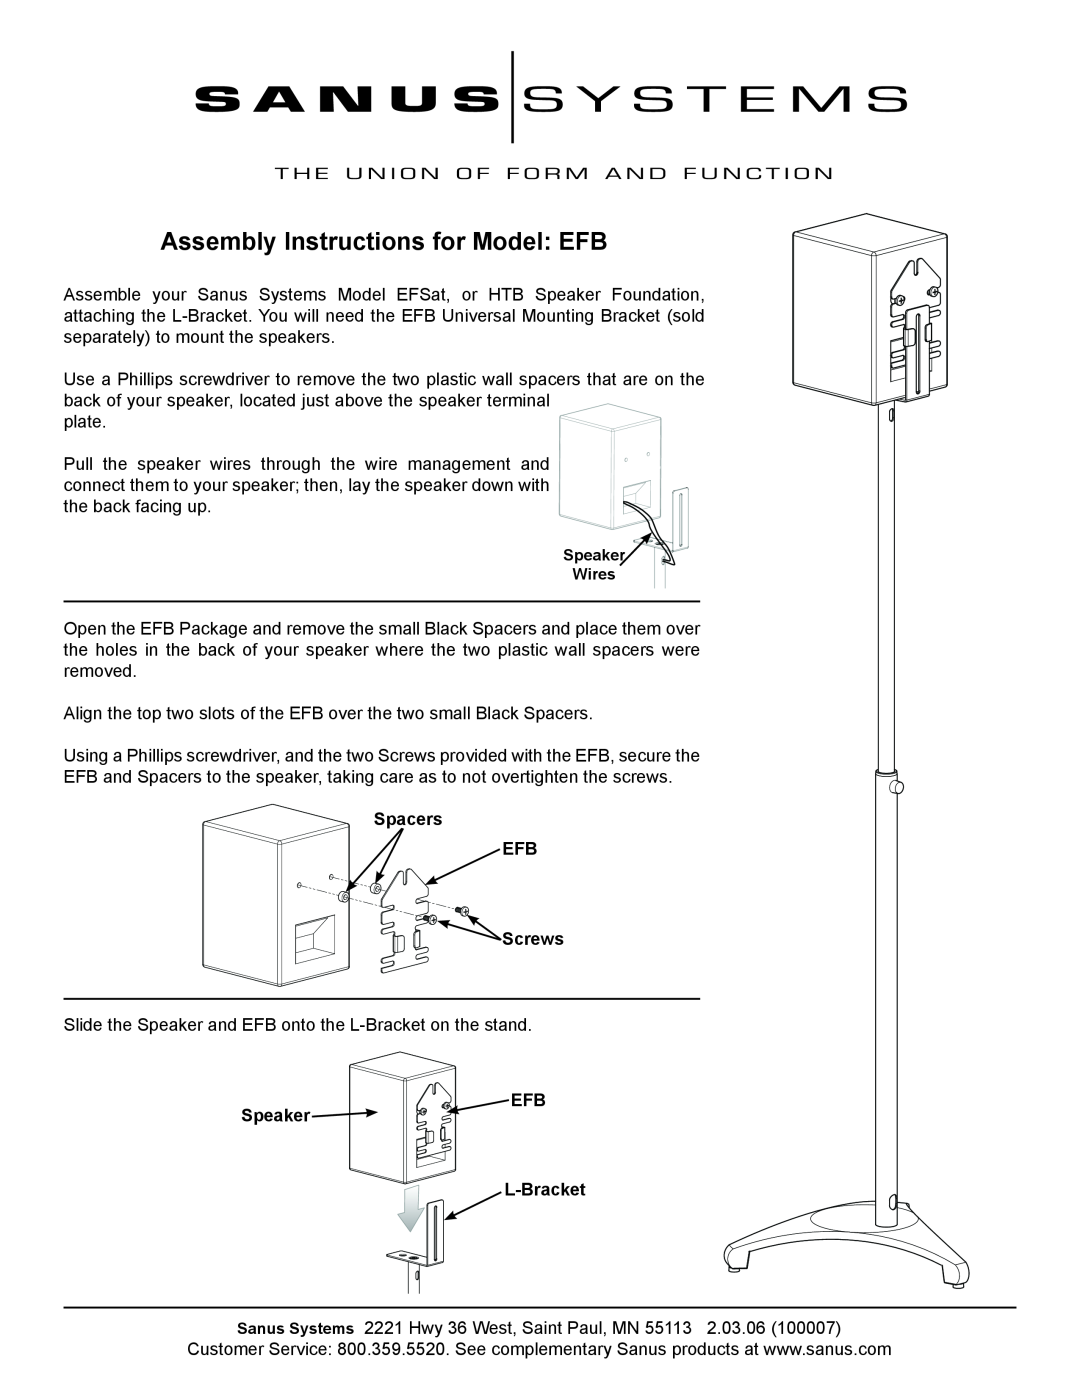 Sanus Systems manual Assembly Instructions for Model EFB, Spacers EFB Screws, Speaker, L-Bracket 